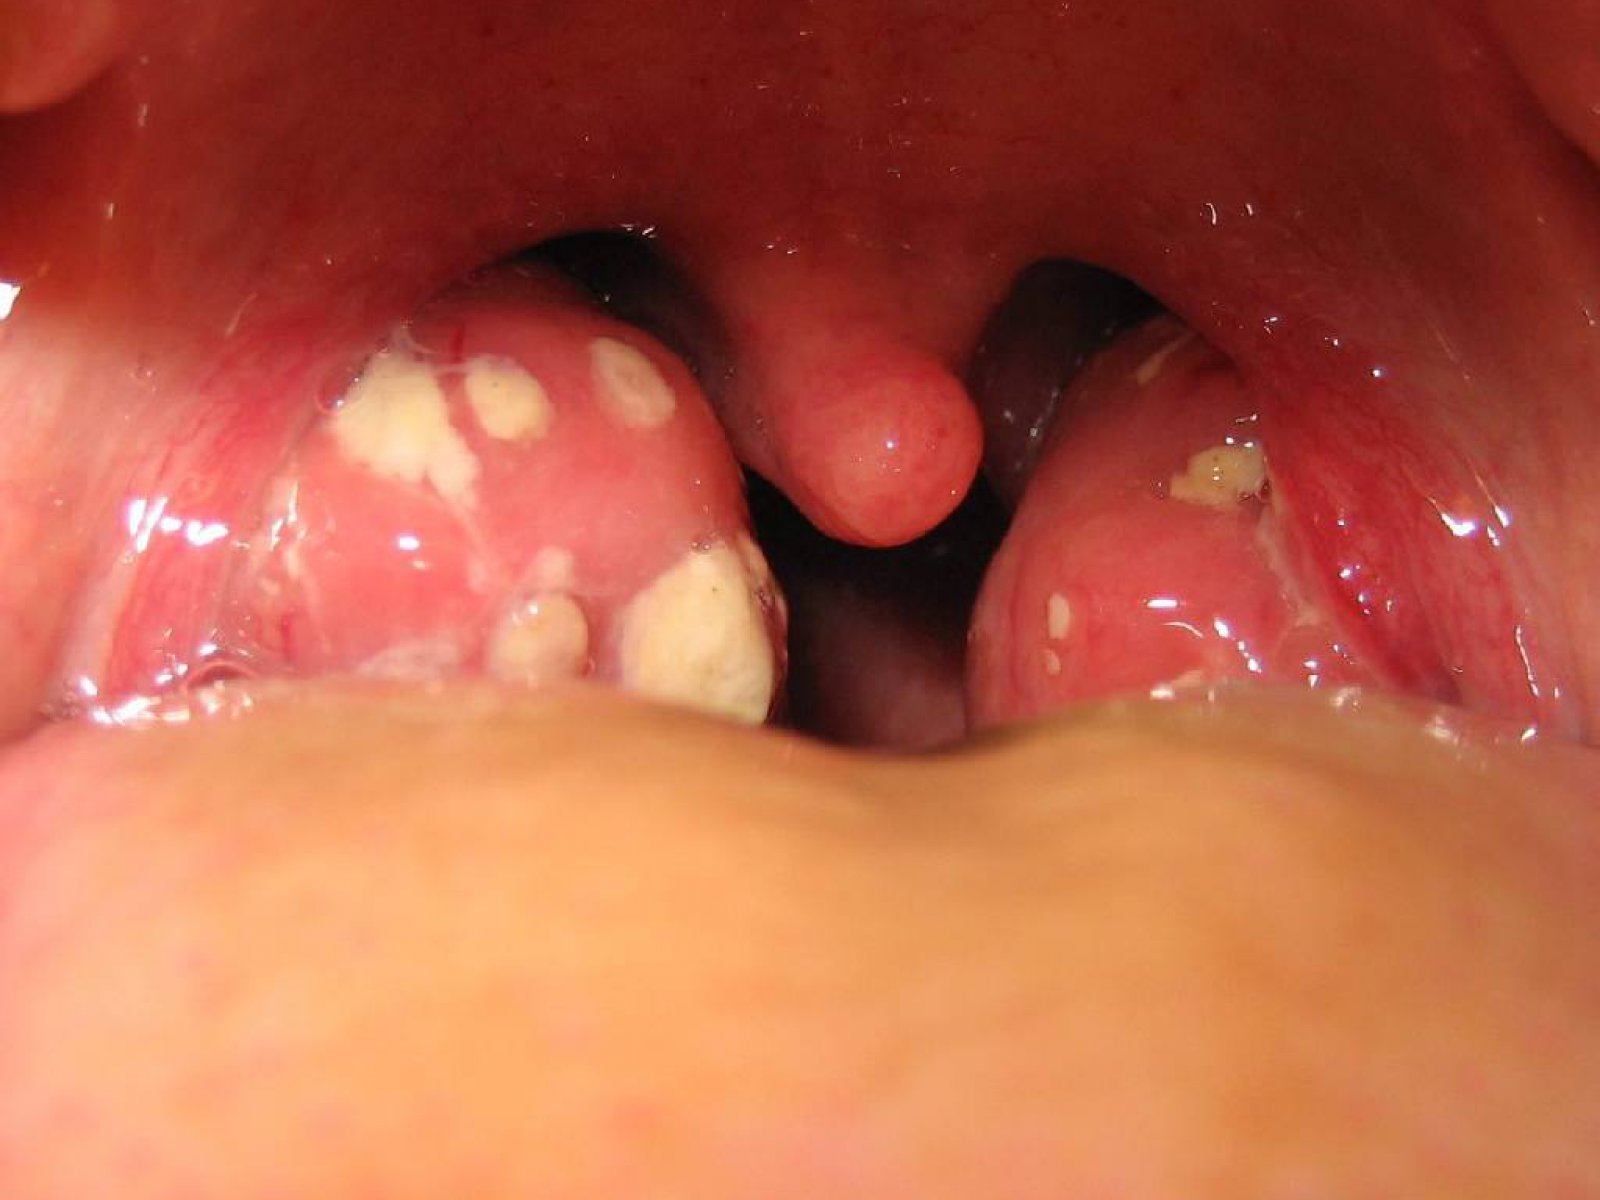   Заболевания горла после орального секса